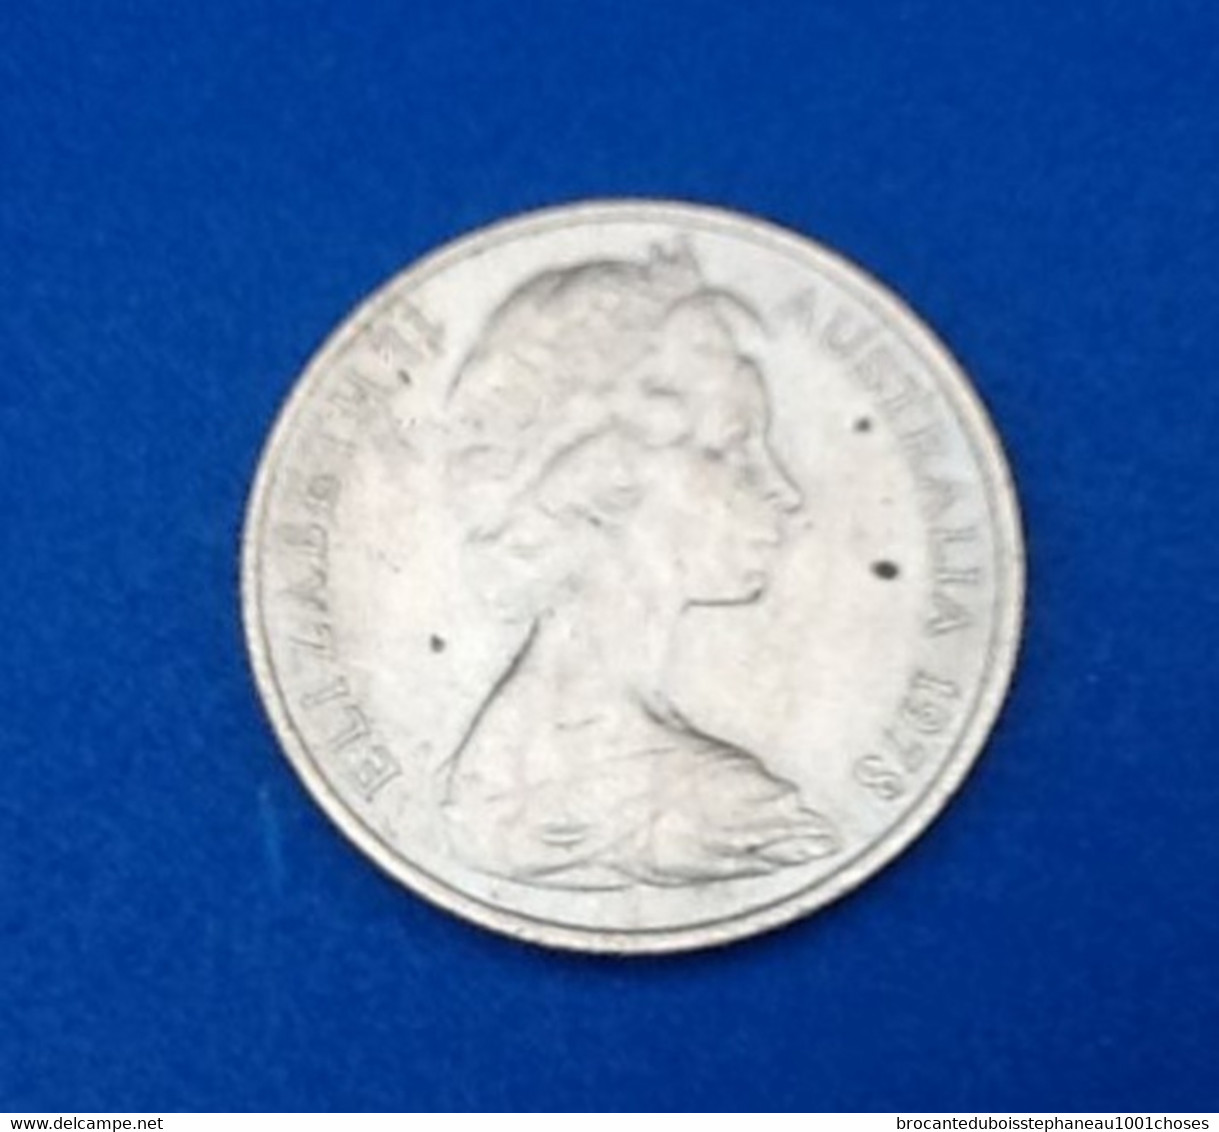 Australia  20 Cents  Elisabeth II  1978  Poids : 11grs  Diamètre : 29mm  Matière : Cupronickel - 20 Cents